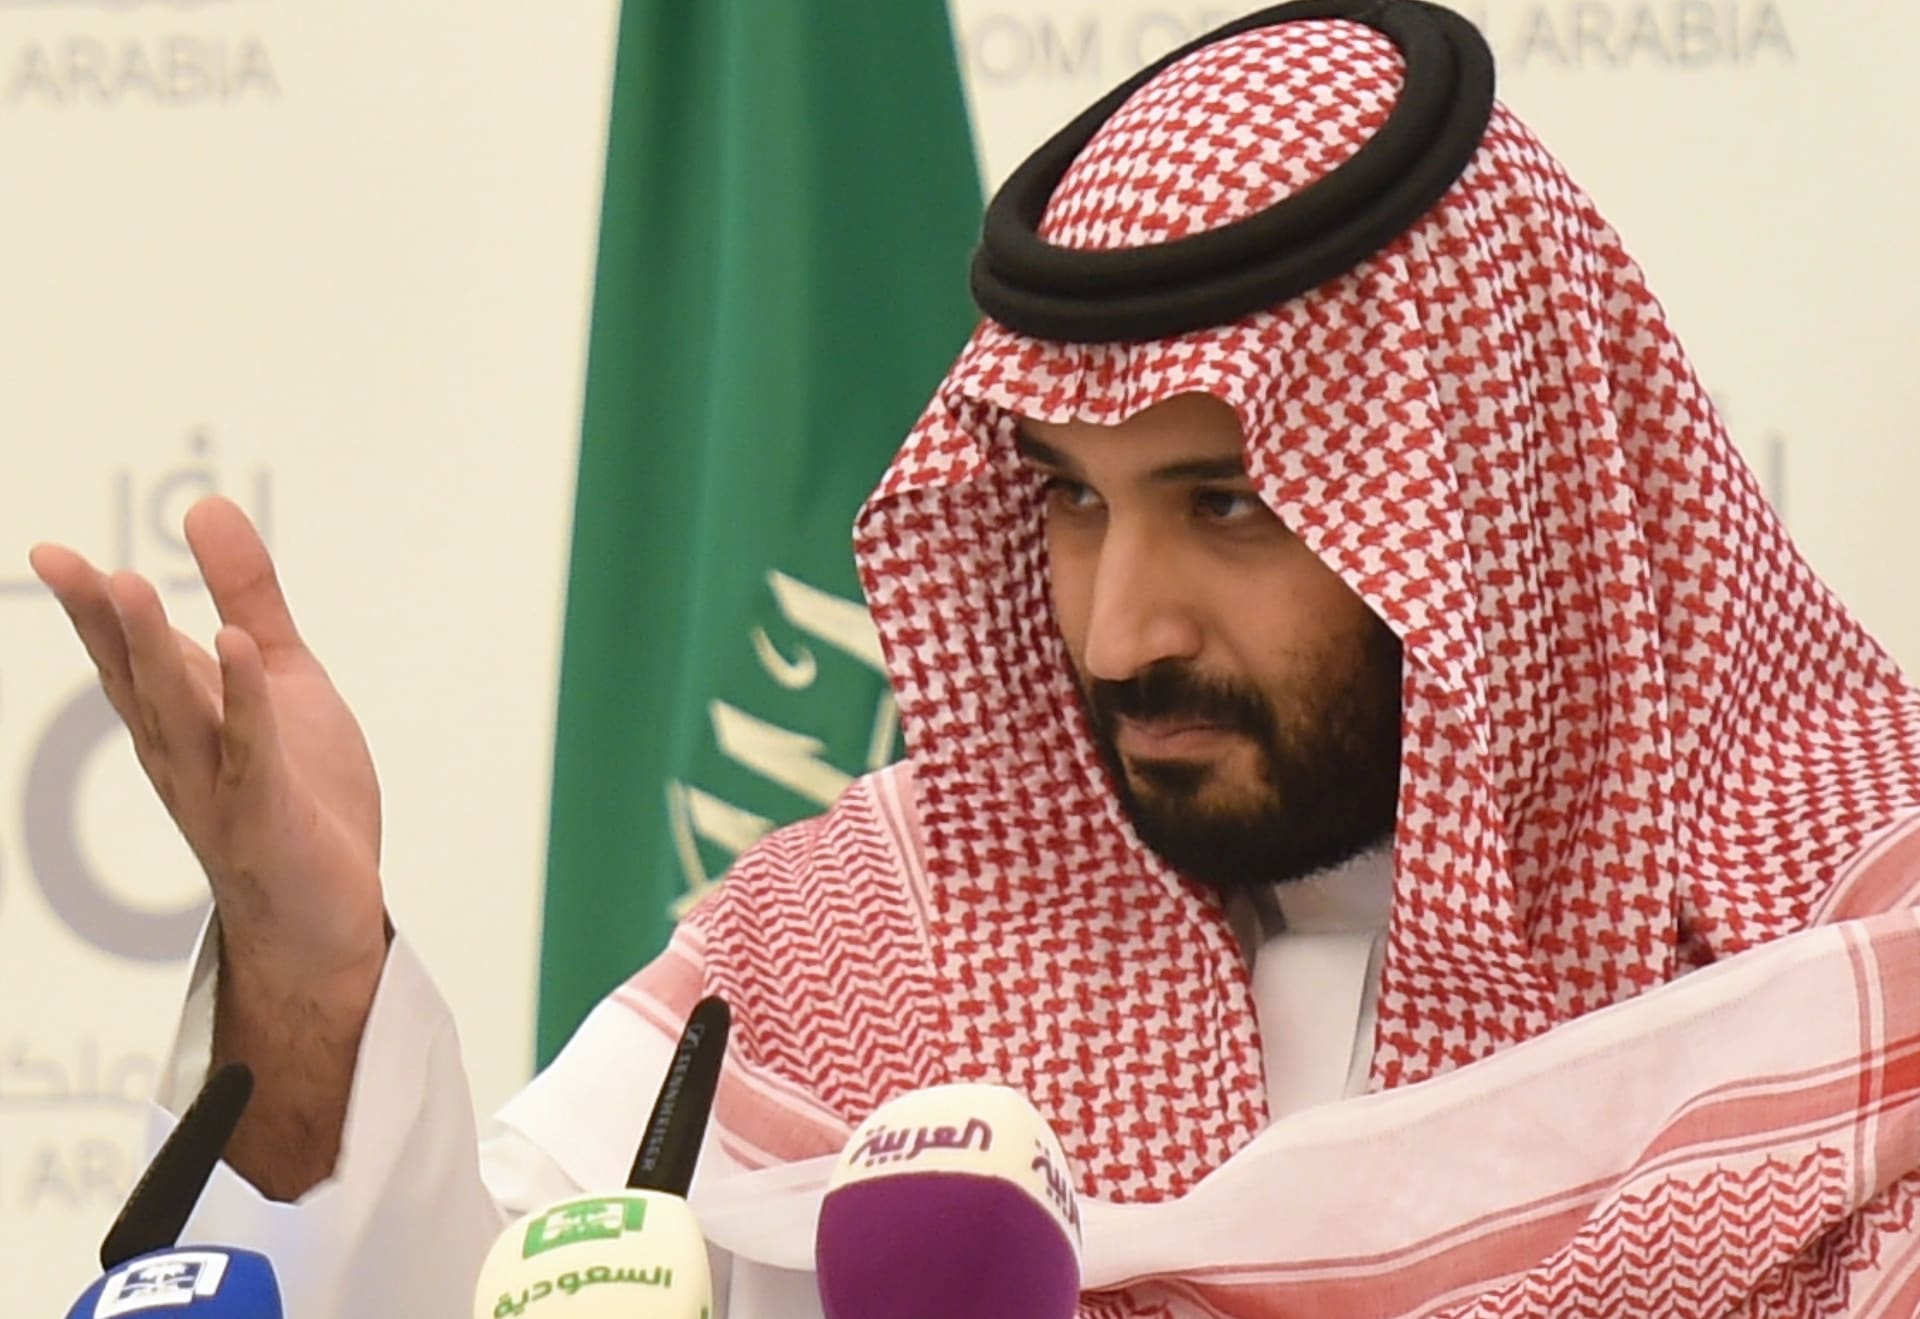 السعودية تسمح للمرأة بالقيادة.. هل تذكرون ما قاله الأمير محمد بن سلمان؟